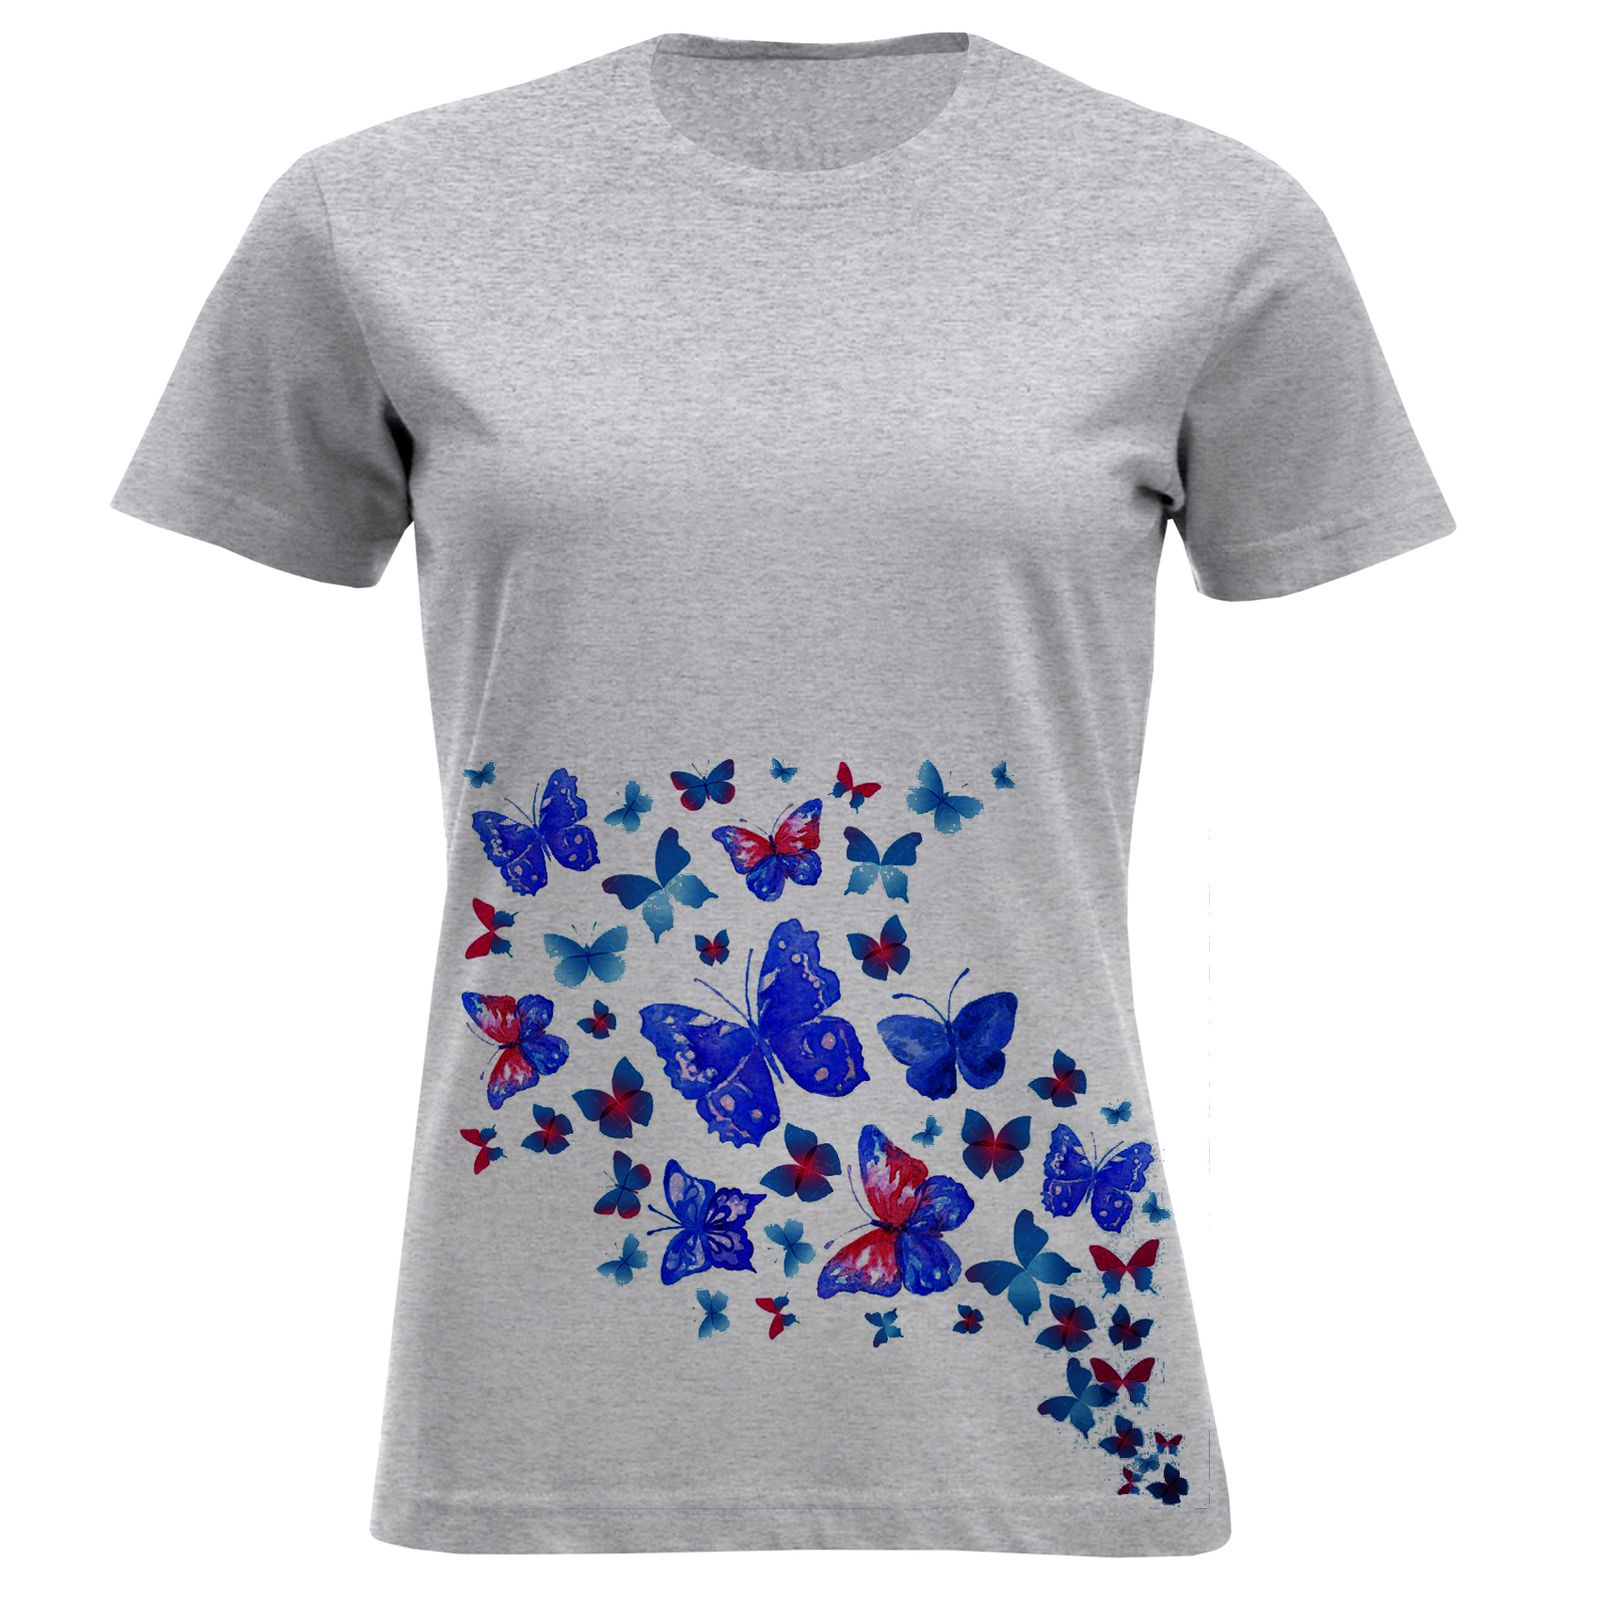 تی شرت زنانه مدل پروانه F897 -  - 1